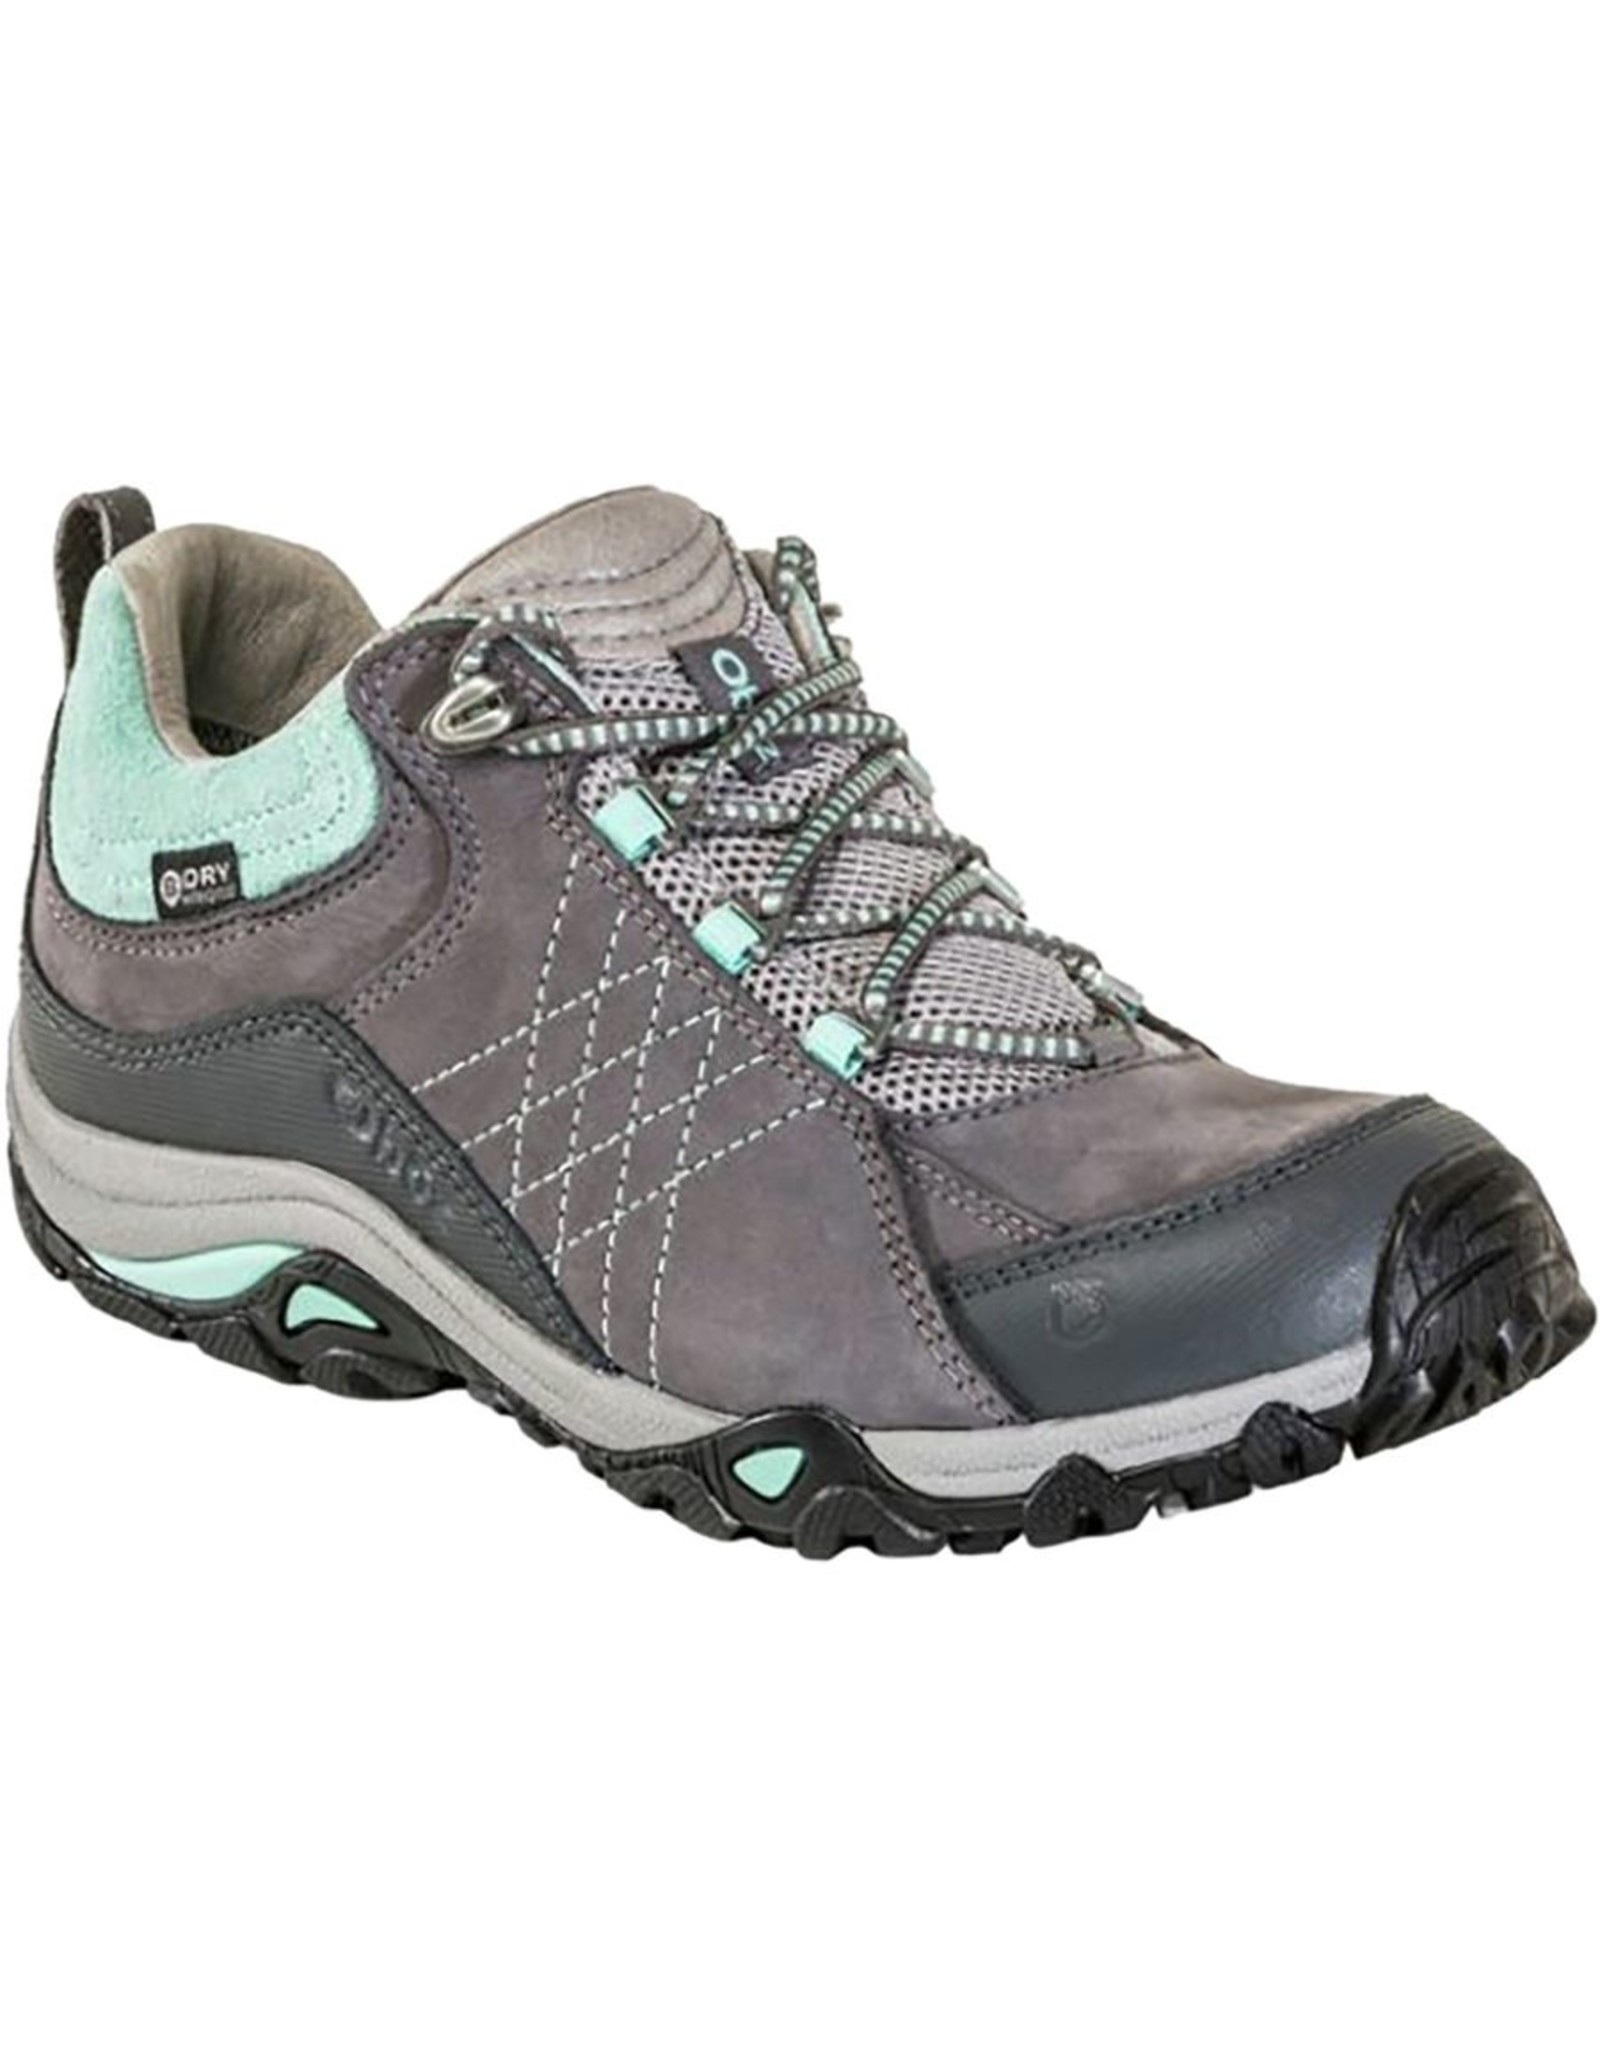 Oboz Women's Sapphire Low B-Dry Waterproof Hiking Shoe Charcoal / Beach Glass 7